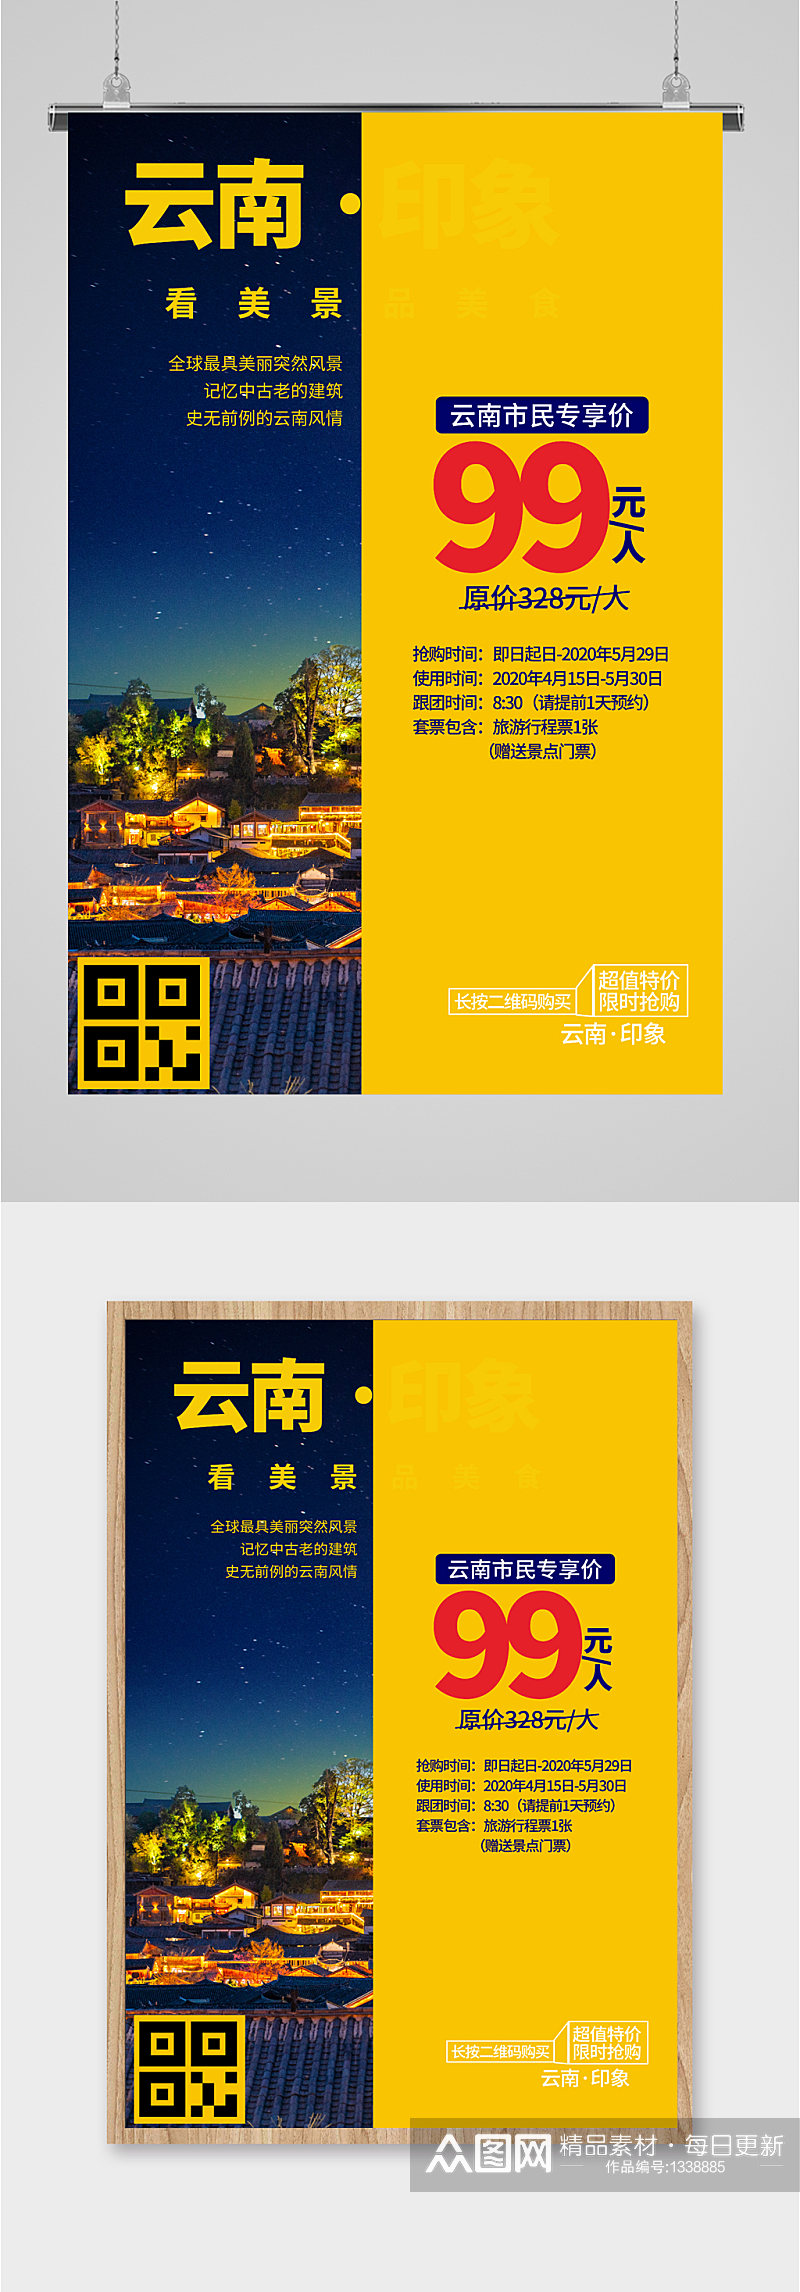 云南旅游旅行社宣传海报素材